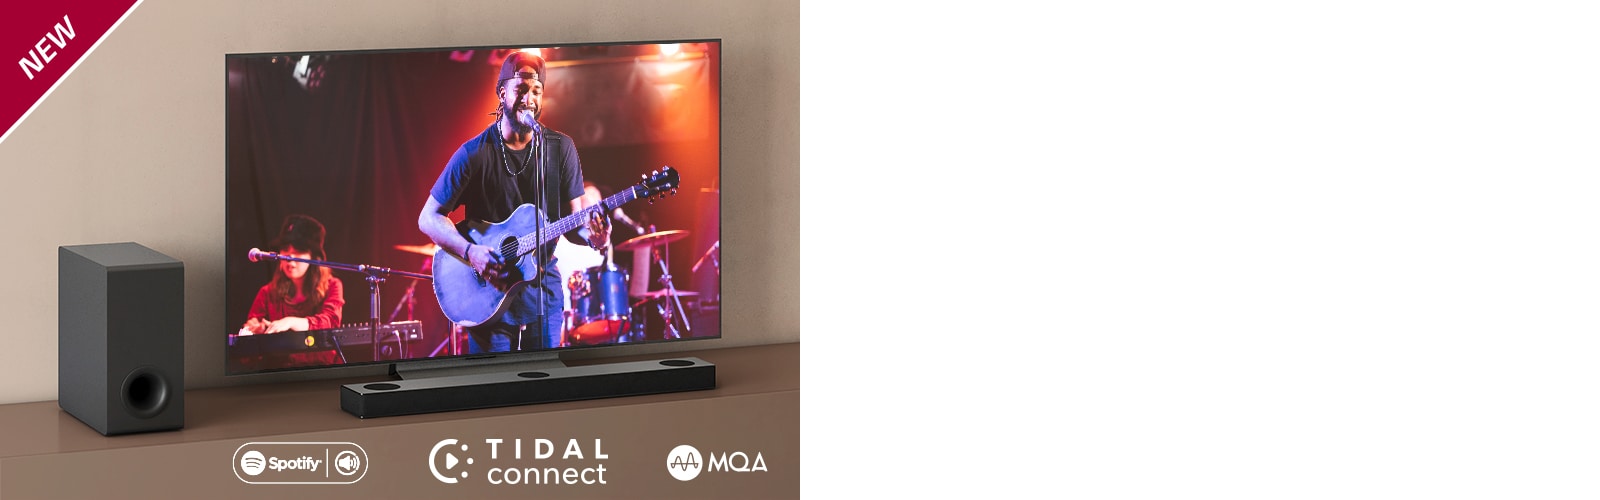 LG TV je postavljen na braon polici, LG Sound Bar S80QY je postavljen ispred televizora. Niskotonac je postavljen sa leve strane televizora. Na televizoru se prikazuje scena sa koncerta. Oznaka NEW prikazana je u gornjem levom uglu.